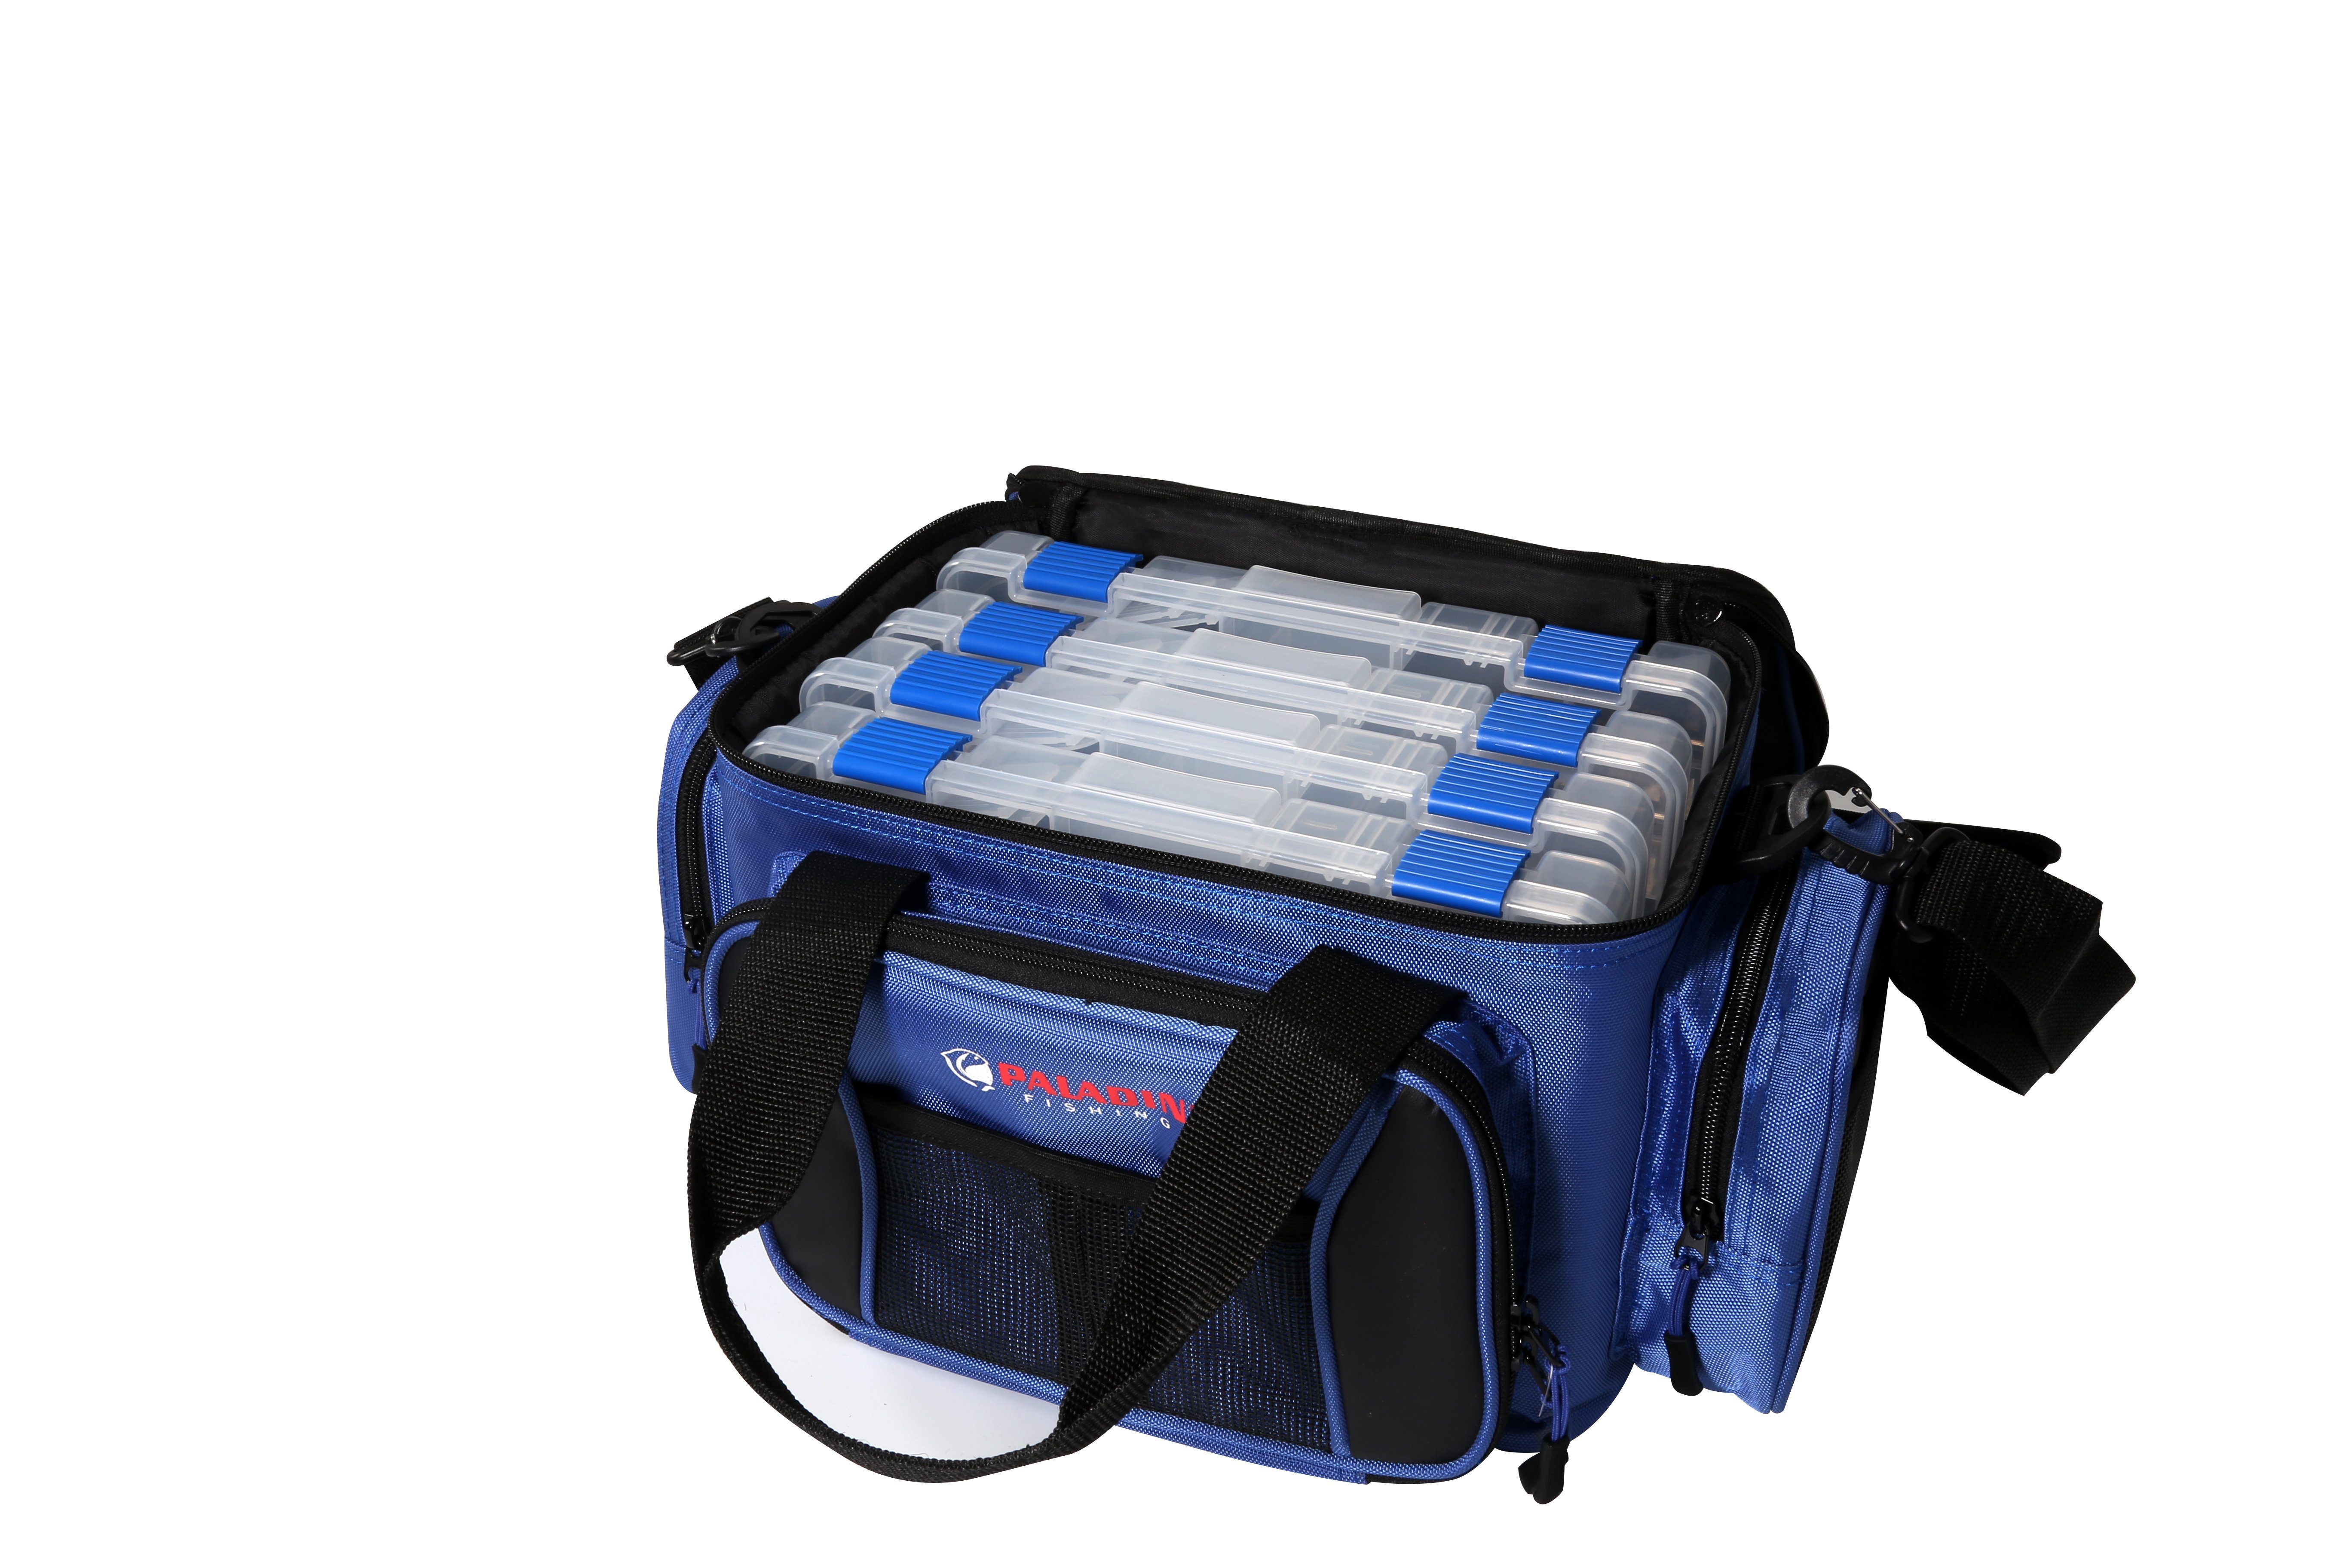 Paladin Angelkoffer Boxentasche (Boxentasche mit 4 Plastikboxen), Angeltasche mit vielen Taschen und Stauraum